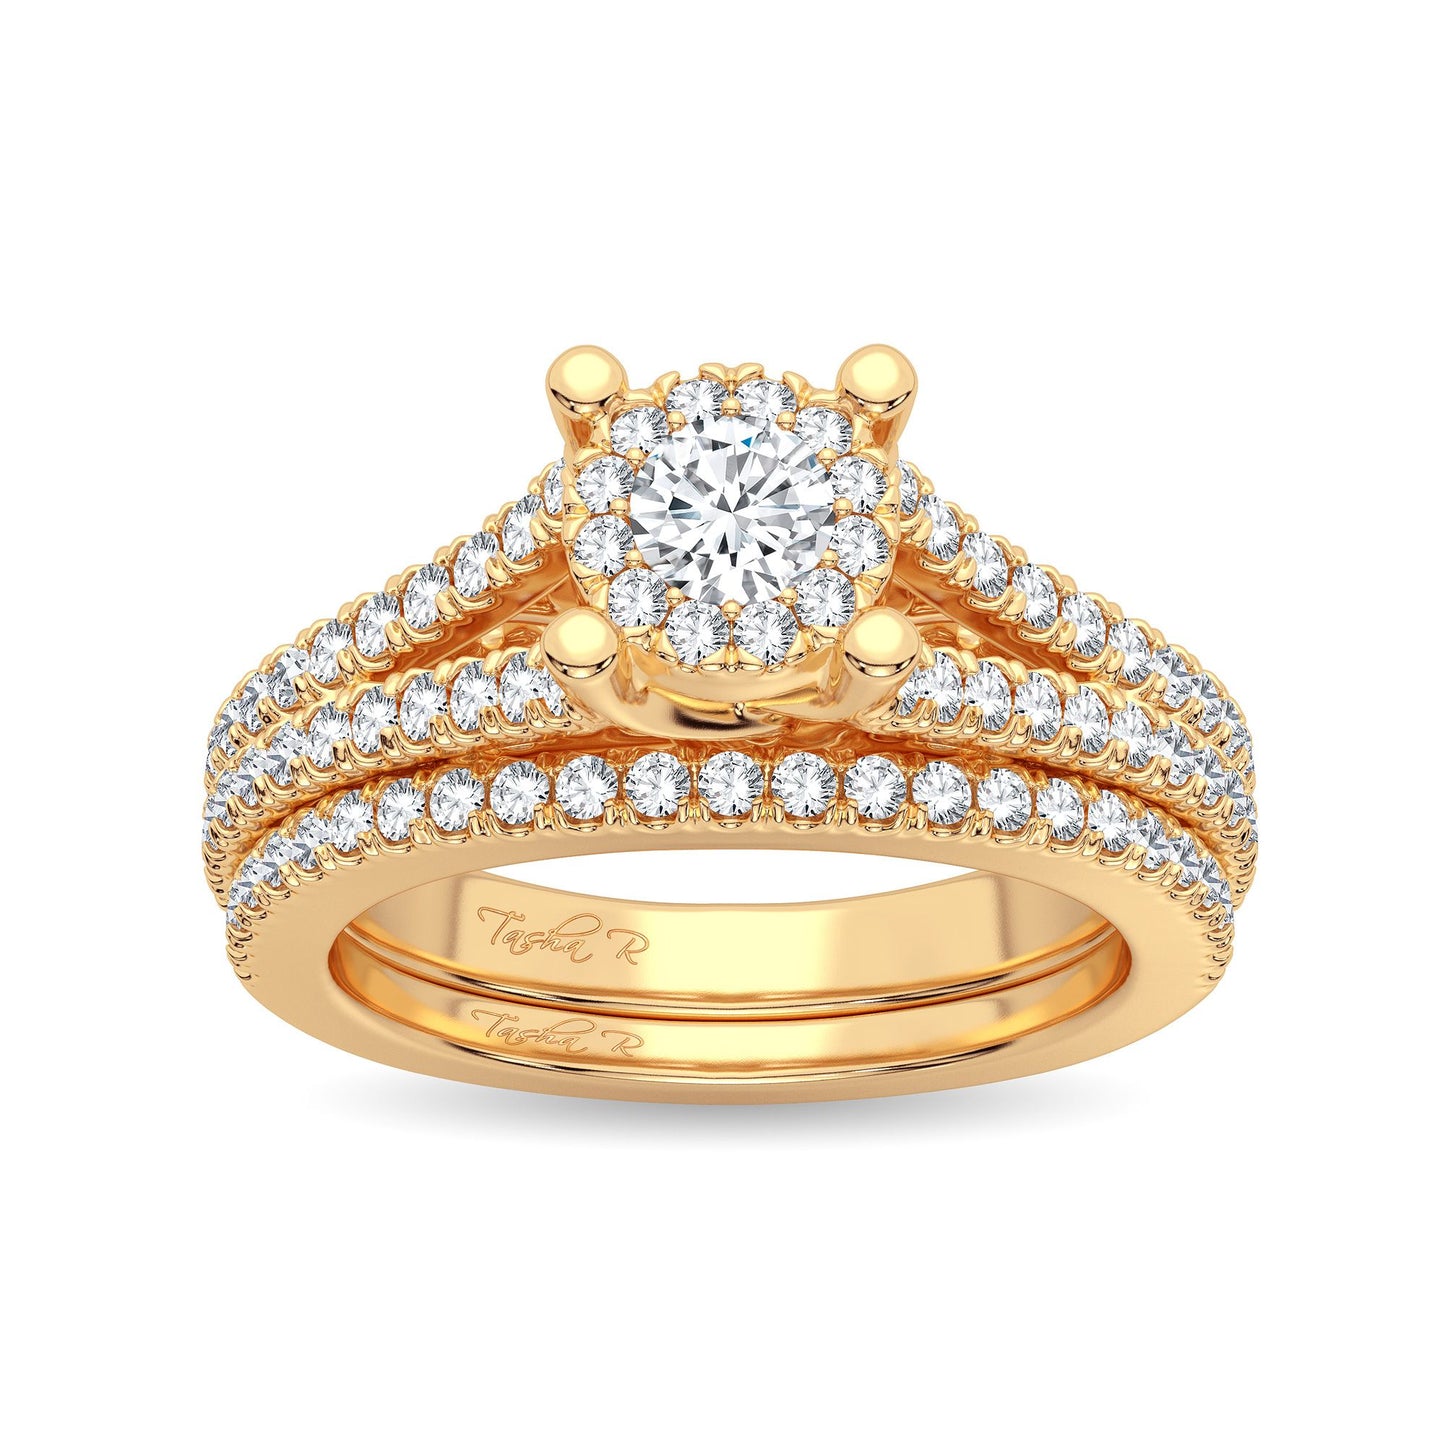 Corona de luz - Conjunto nupcial de oro amarillo de 14 quilates con diamantes de 0,83 quilates